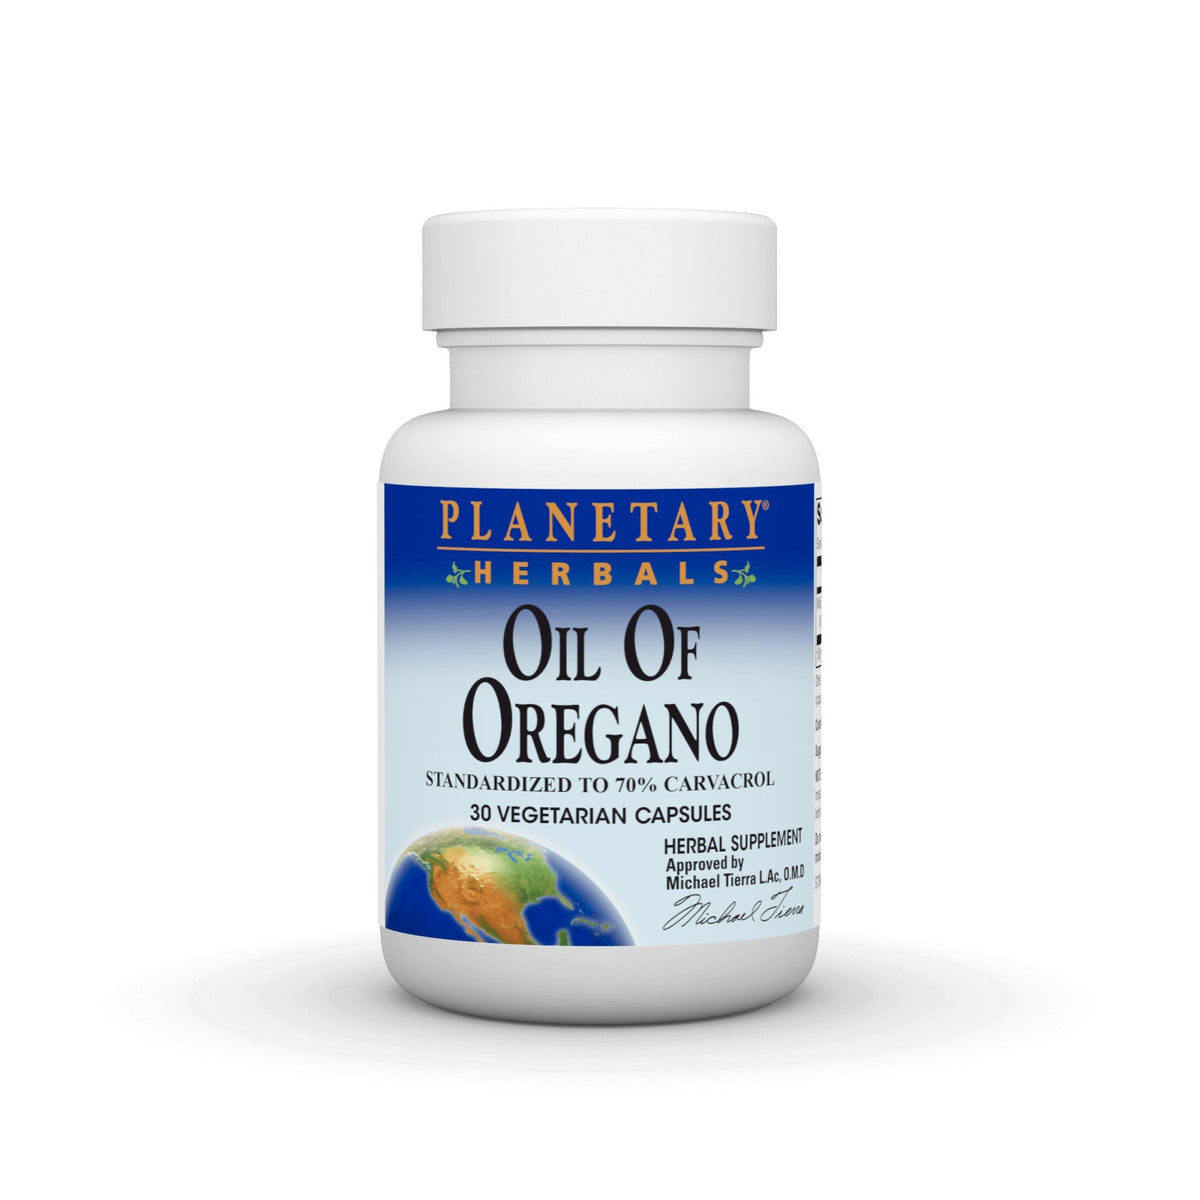 Planetary Herbals Oil of Oregano 30 Vegetarian Capsules